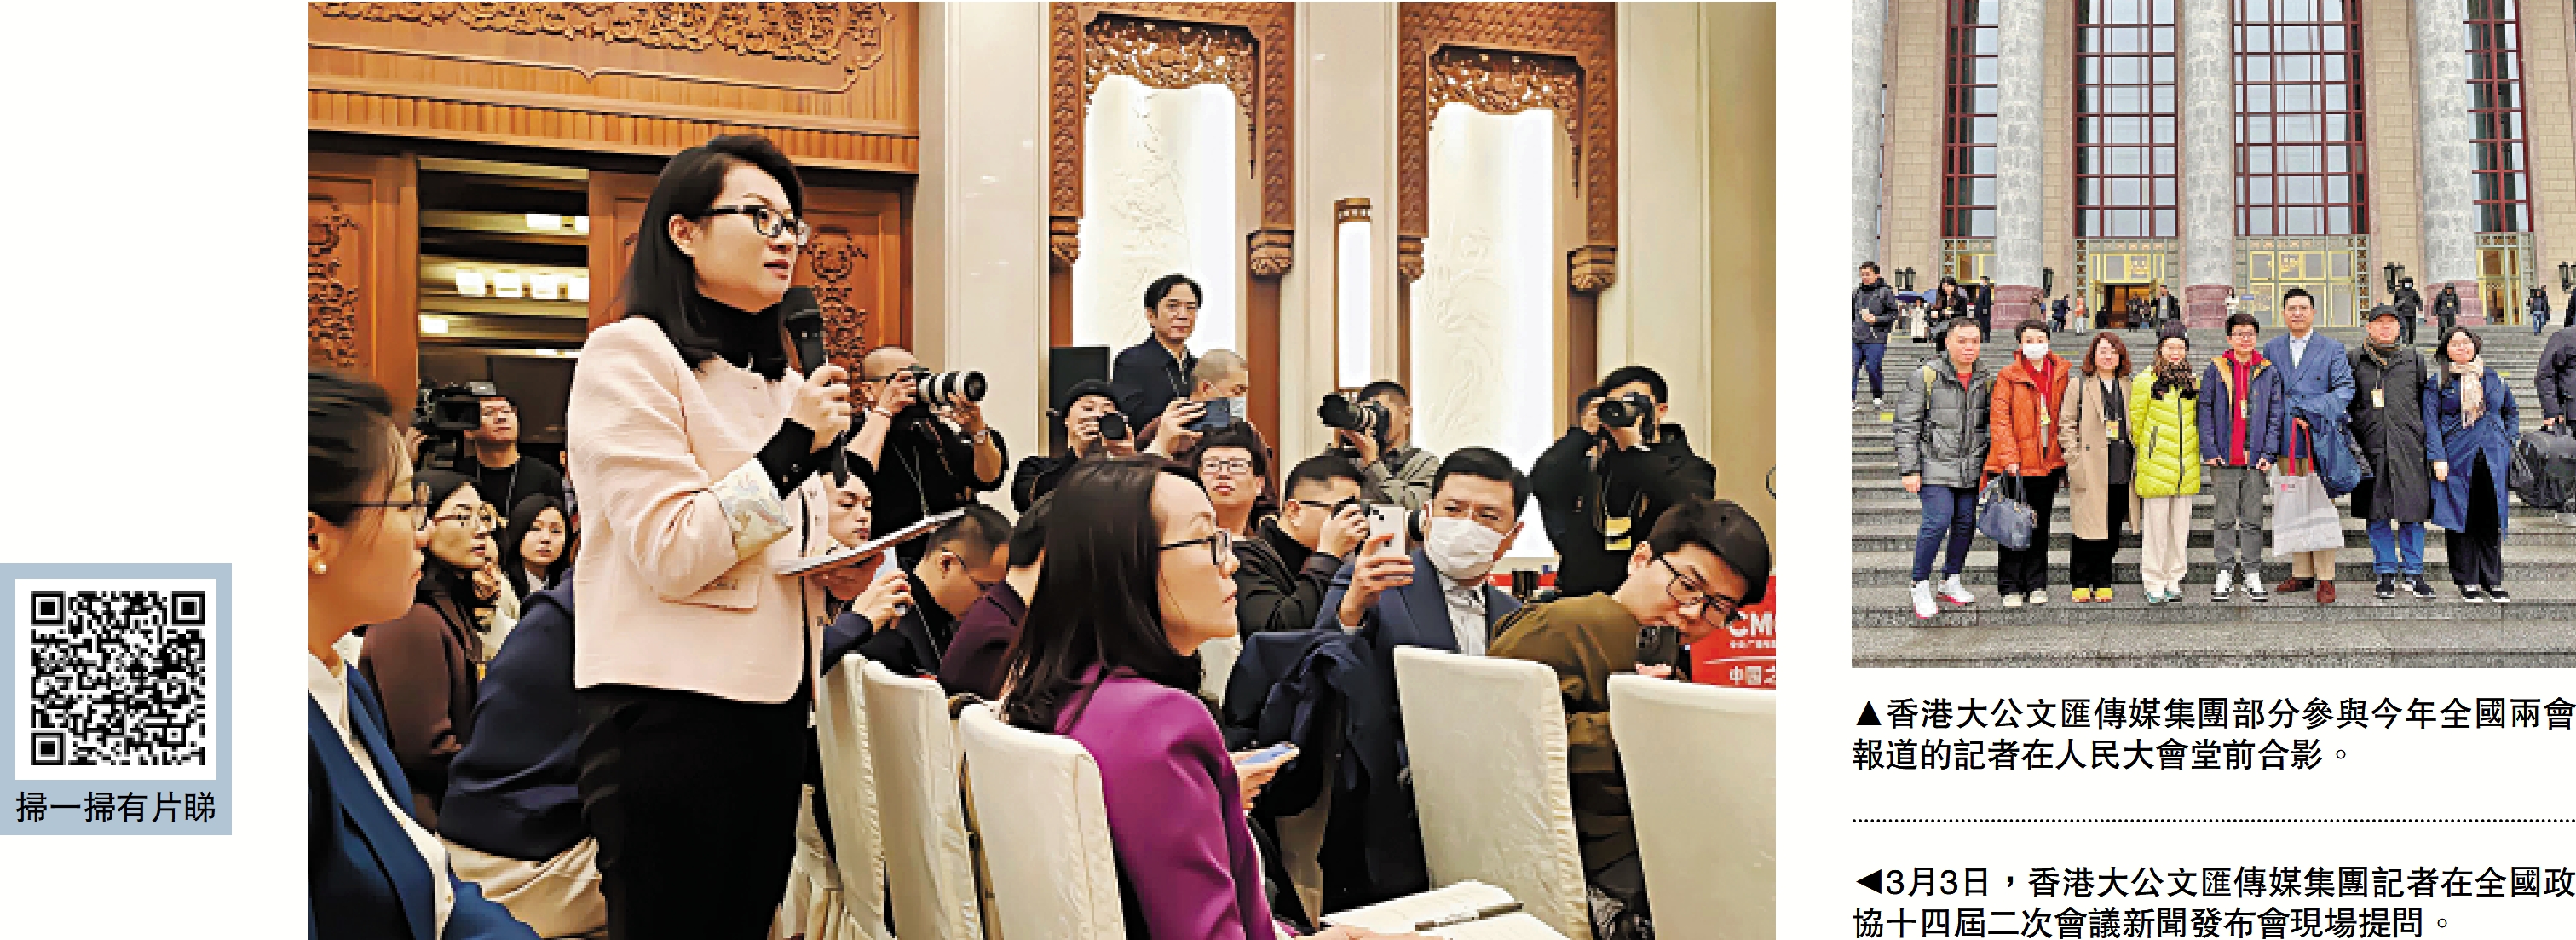 　　右圖：香港大公文匯傳媒集團部分參與今年全國兩會報道的記者在人民大會堂前合影。左圖：3月3日，香港大公文匯傳媒集團記者在全國政協十四屆二次會議新聞發布會現場提問。